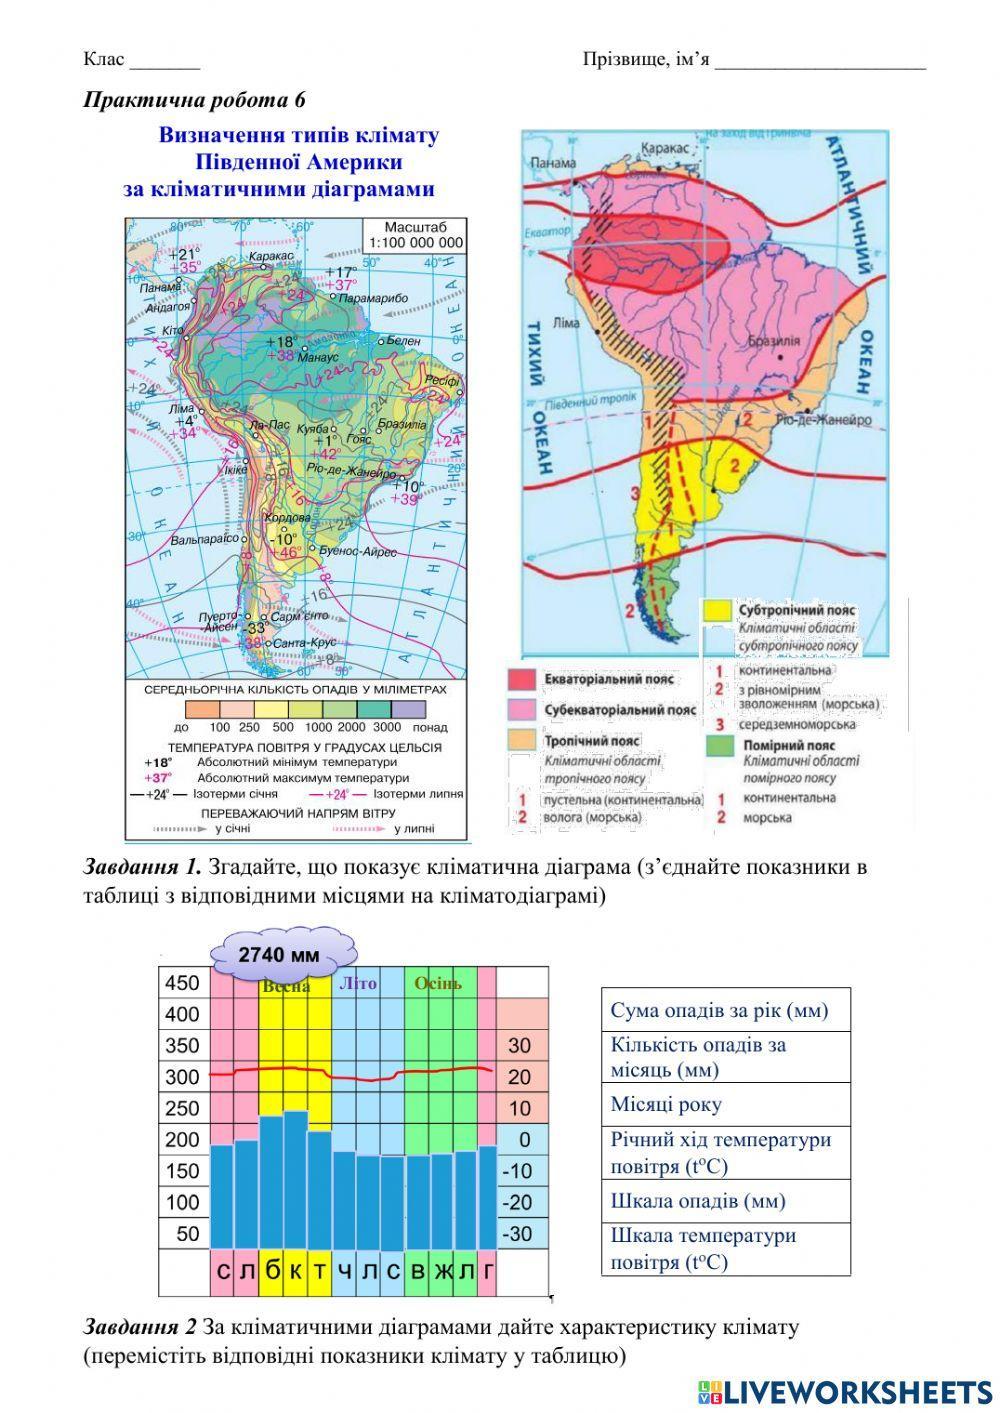 Визначення типів клімату Південної Америки  за кліматичними діаграмами